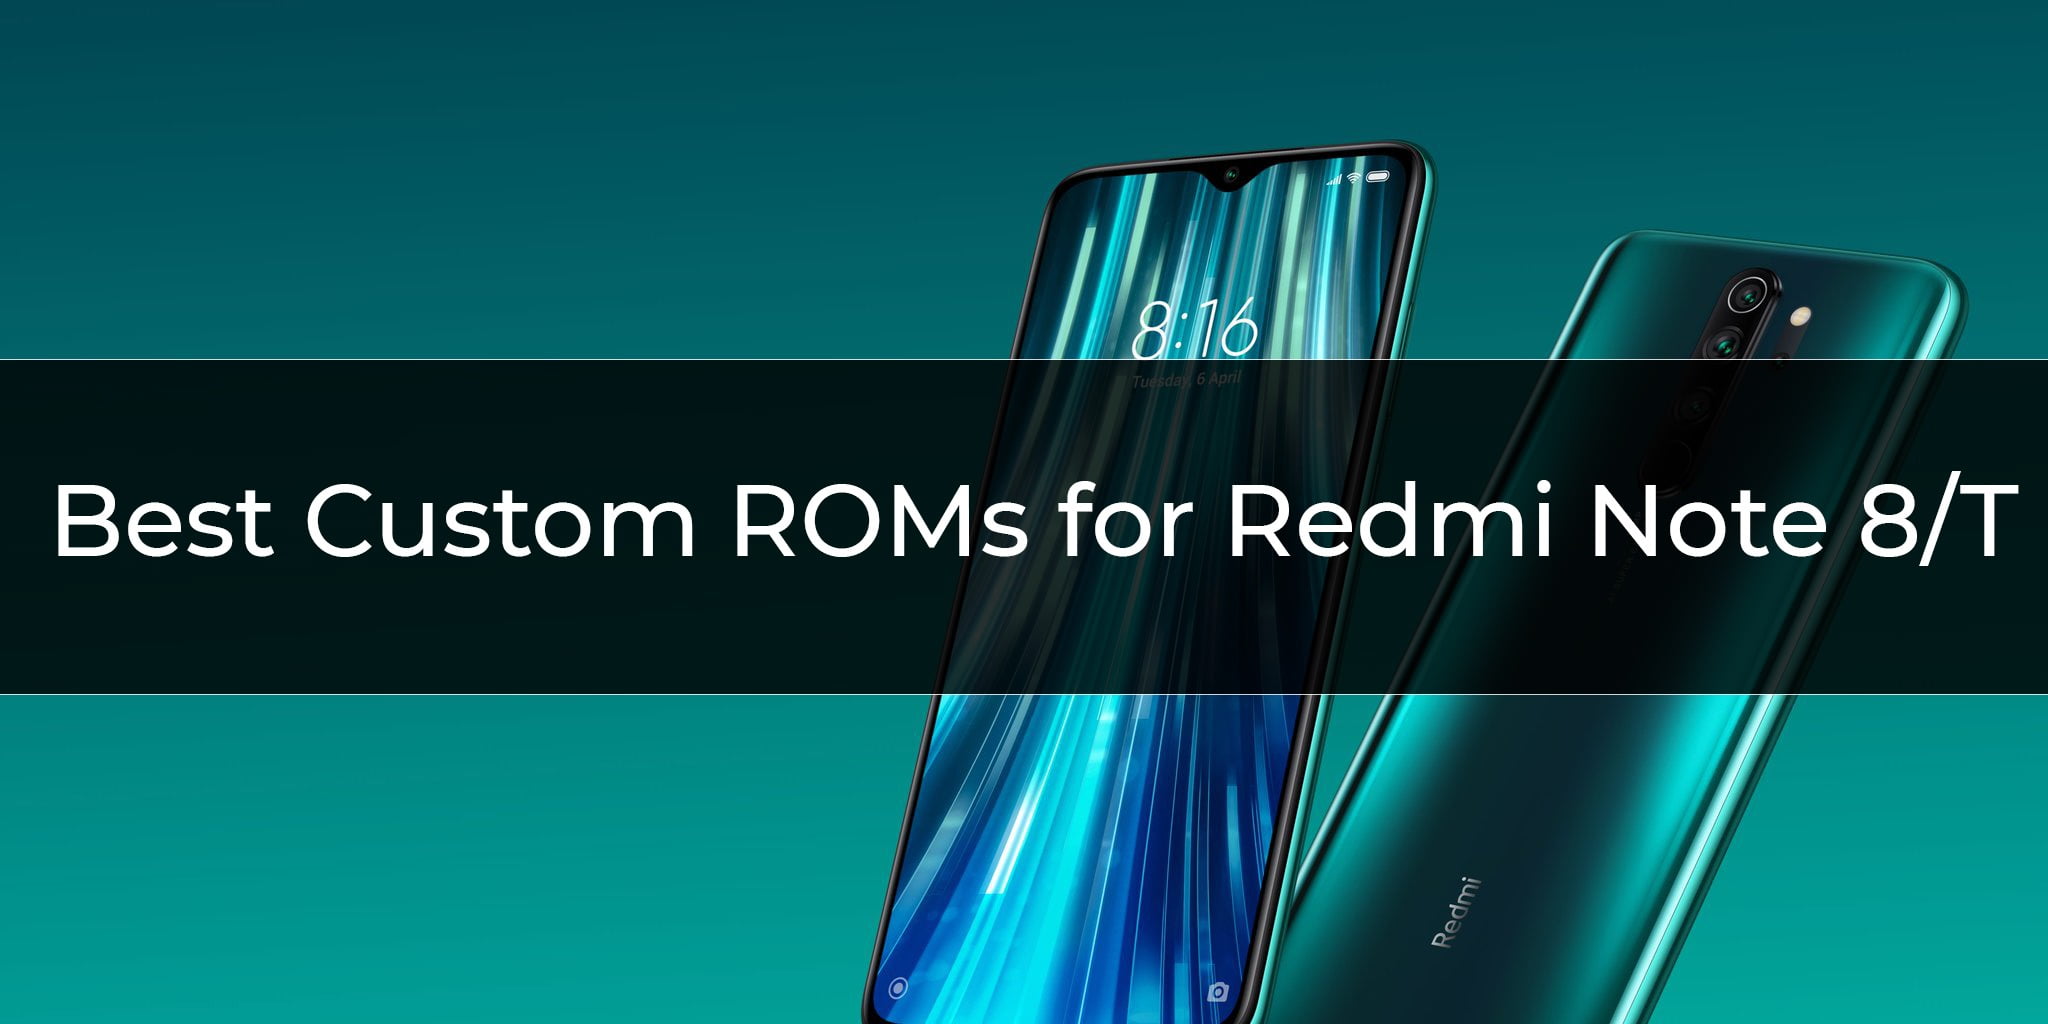 Best Custom ROMs for Redmi Note 8/T